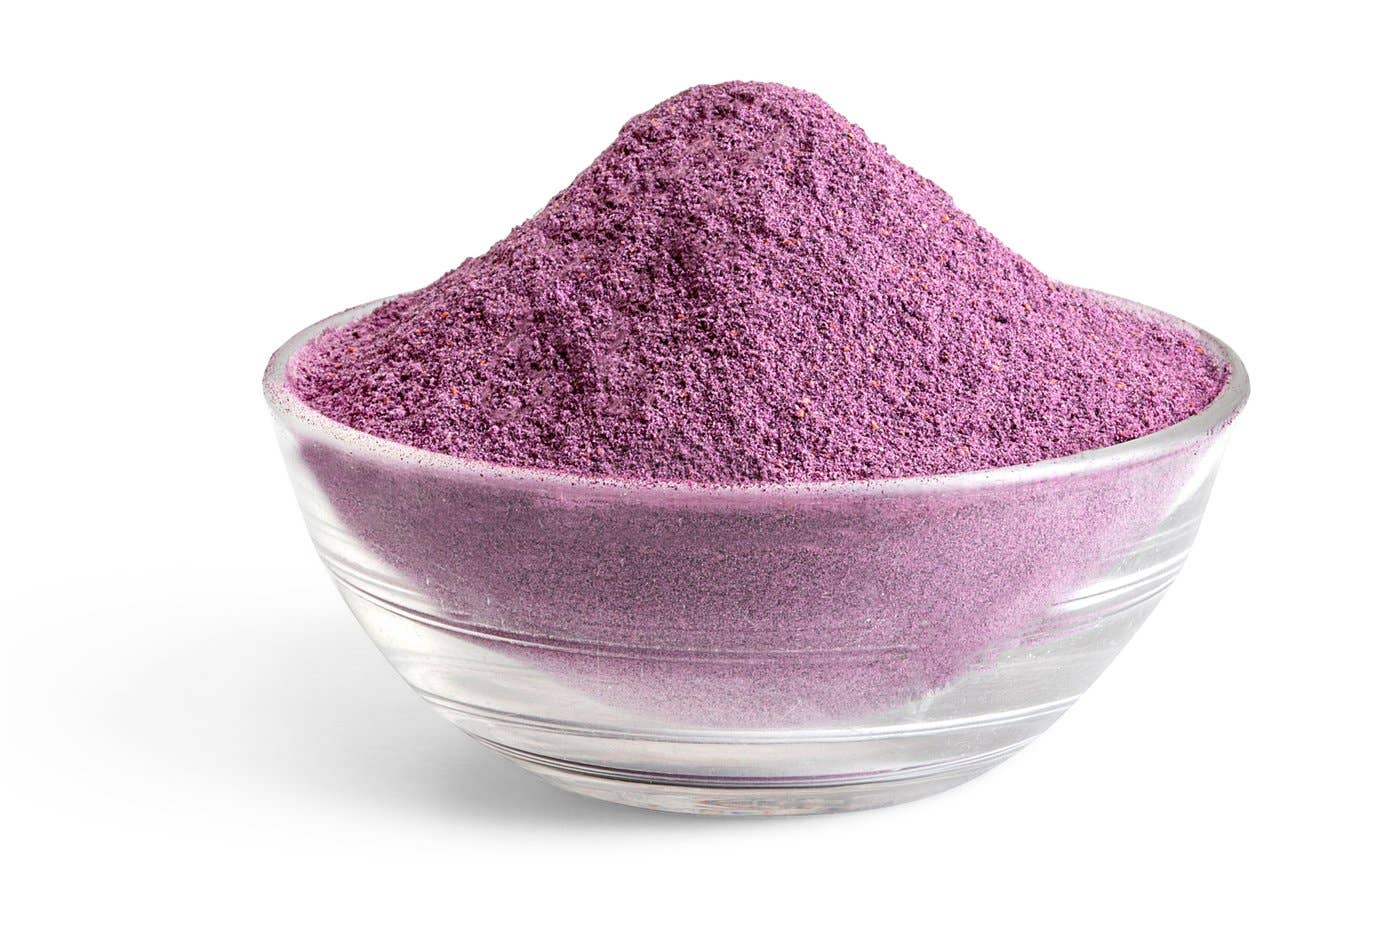 Organic Freeze Dried Blueberry Powder - 2 oz